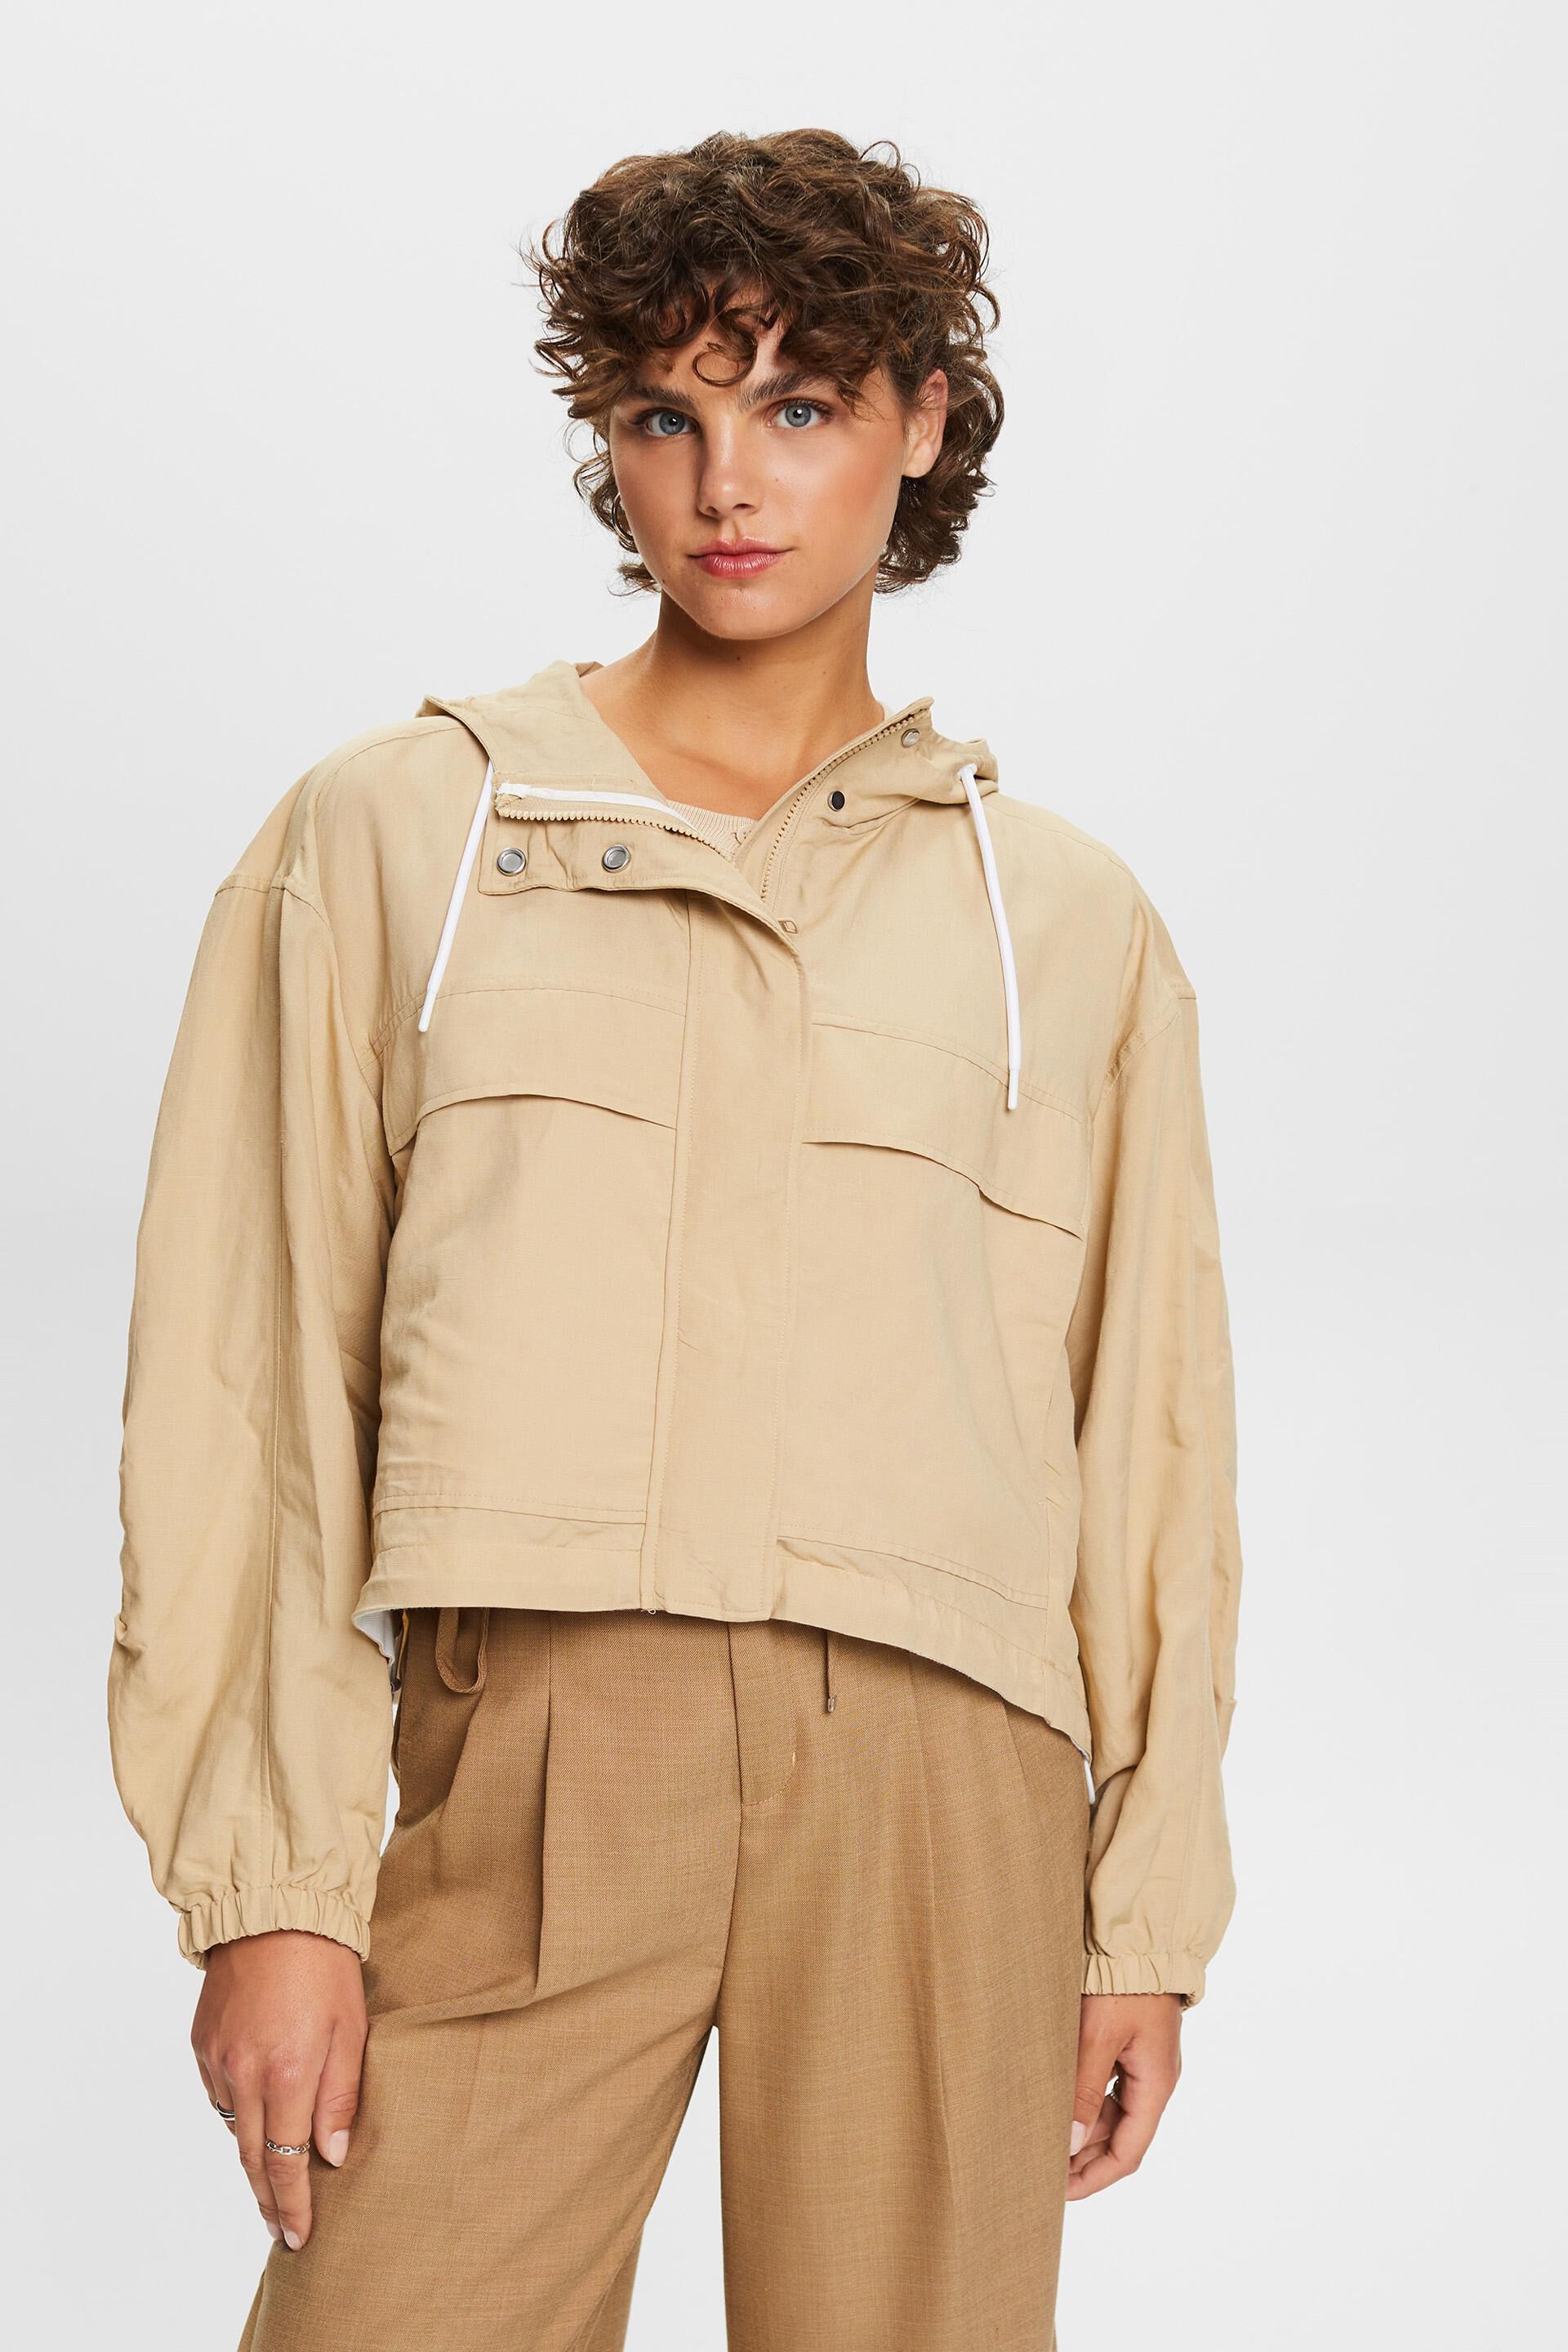 Esprit a linen blend jacket hood, with Transitional